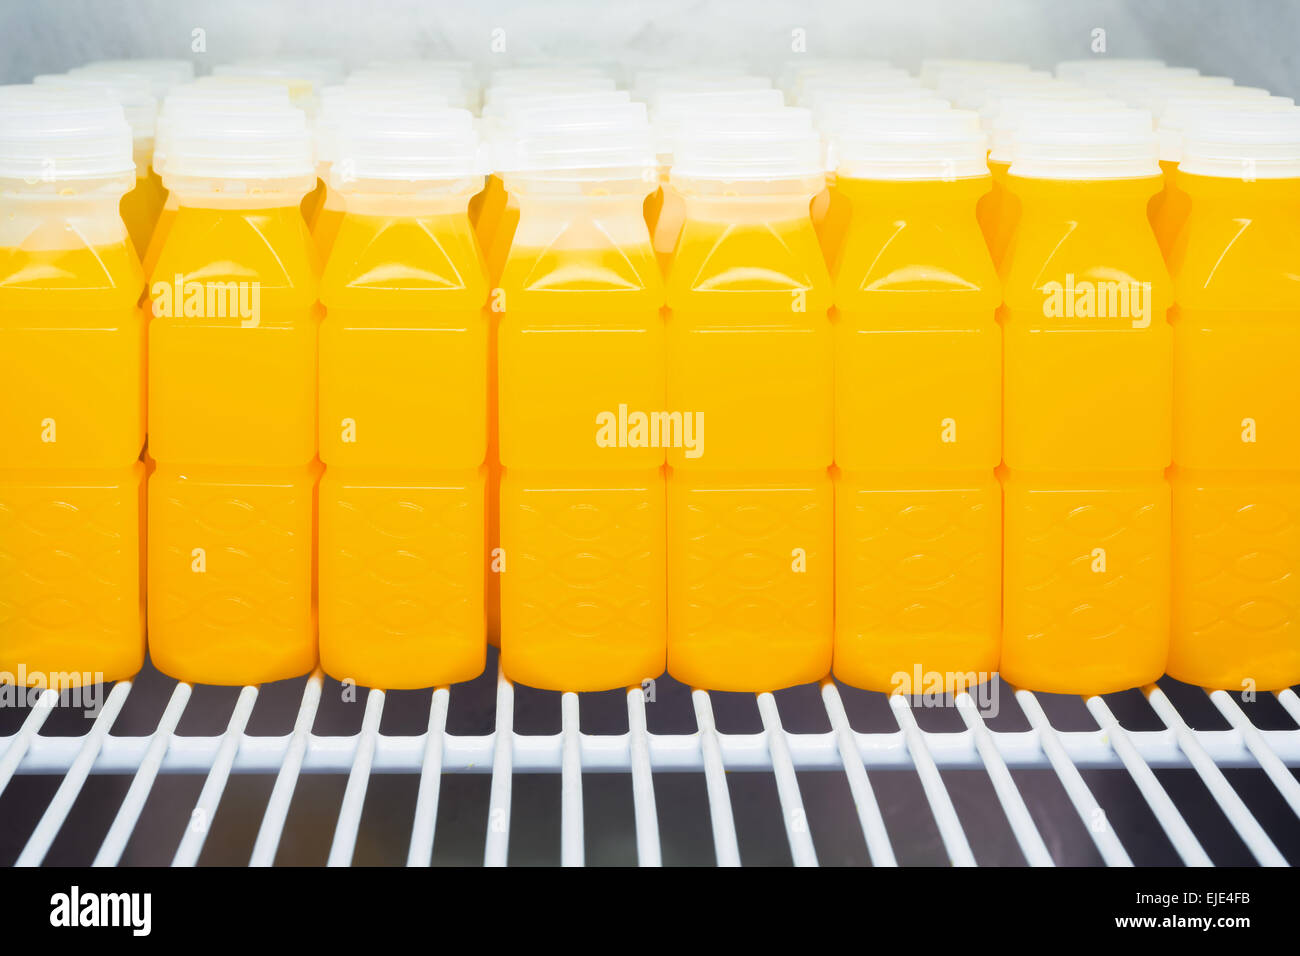 https://c8.alamy.com/comp/EJE4FB/orange-juice-bottles-in-refrigerator-EJE4FB.jpg